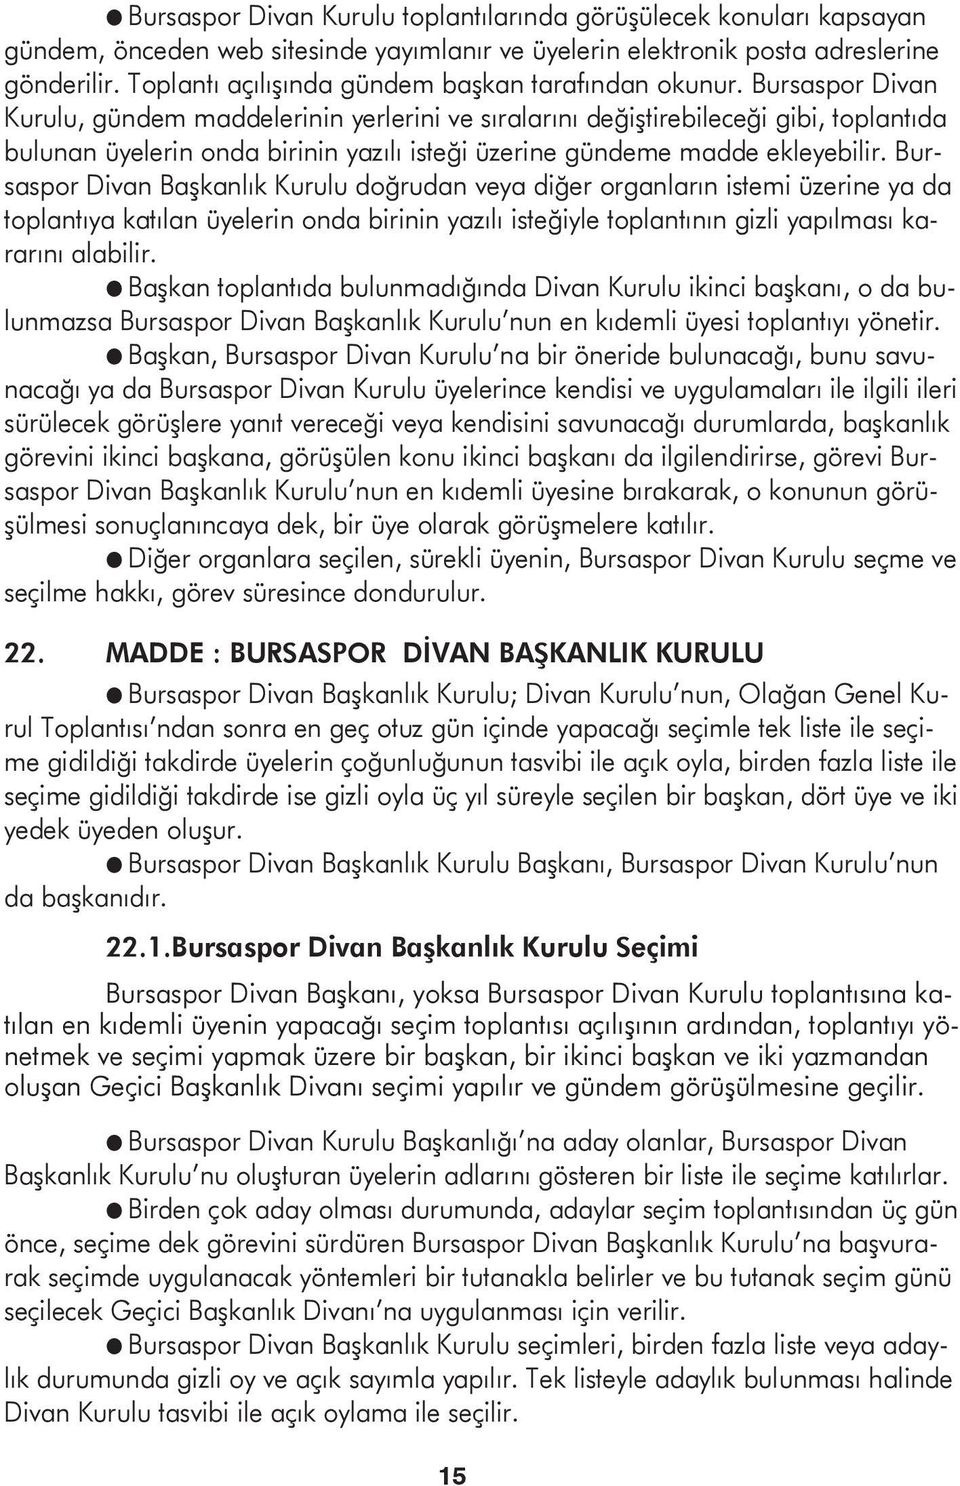 Bursaspor Divan Kurulu, gündem maddelerinin yerlerini ve sıralarını değiştirebileceği gibi, toplantıda bulunan üyelerin onda birinin yazılı isteği üzerine gündeme madde ekleyebilir.